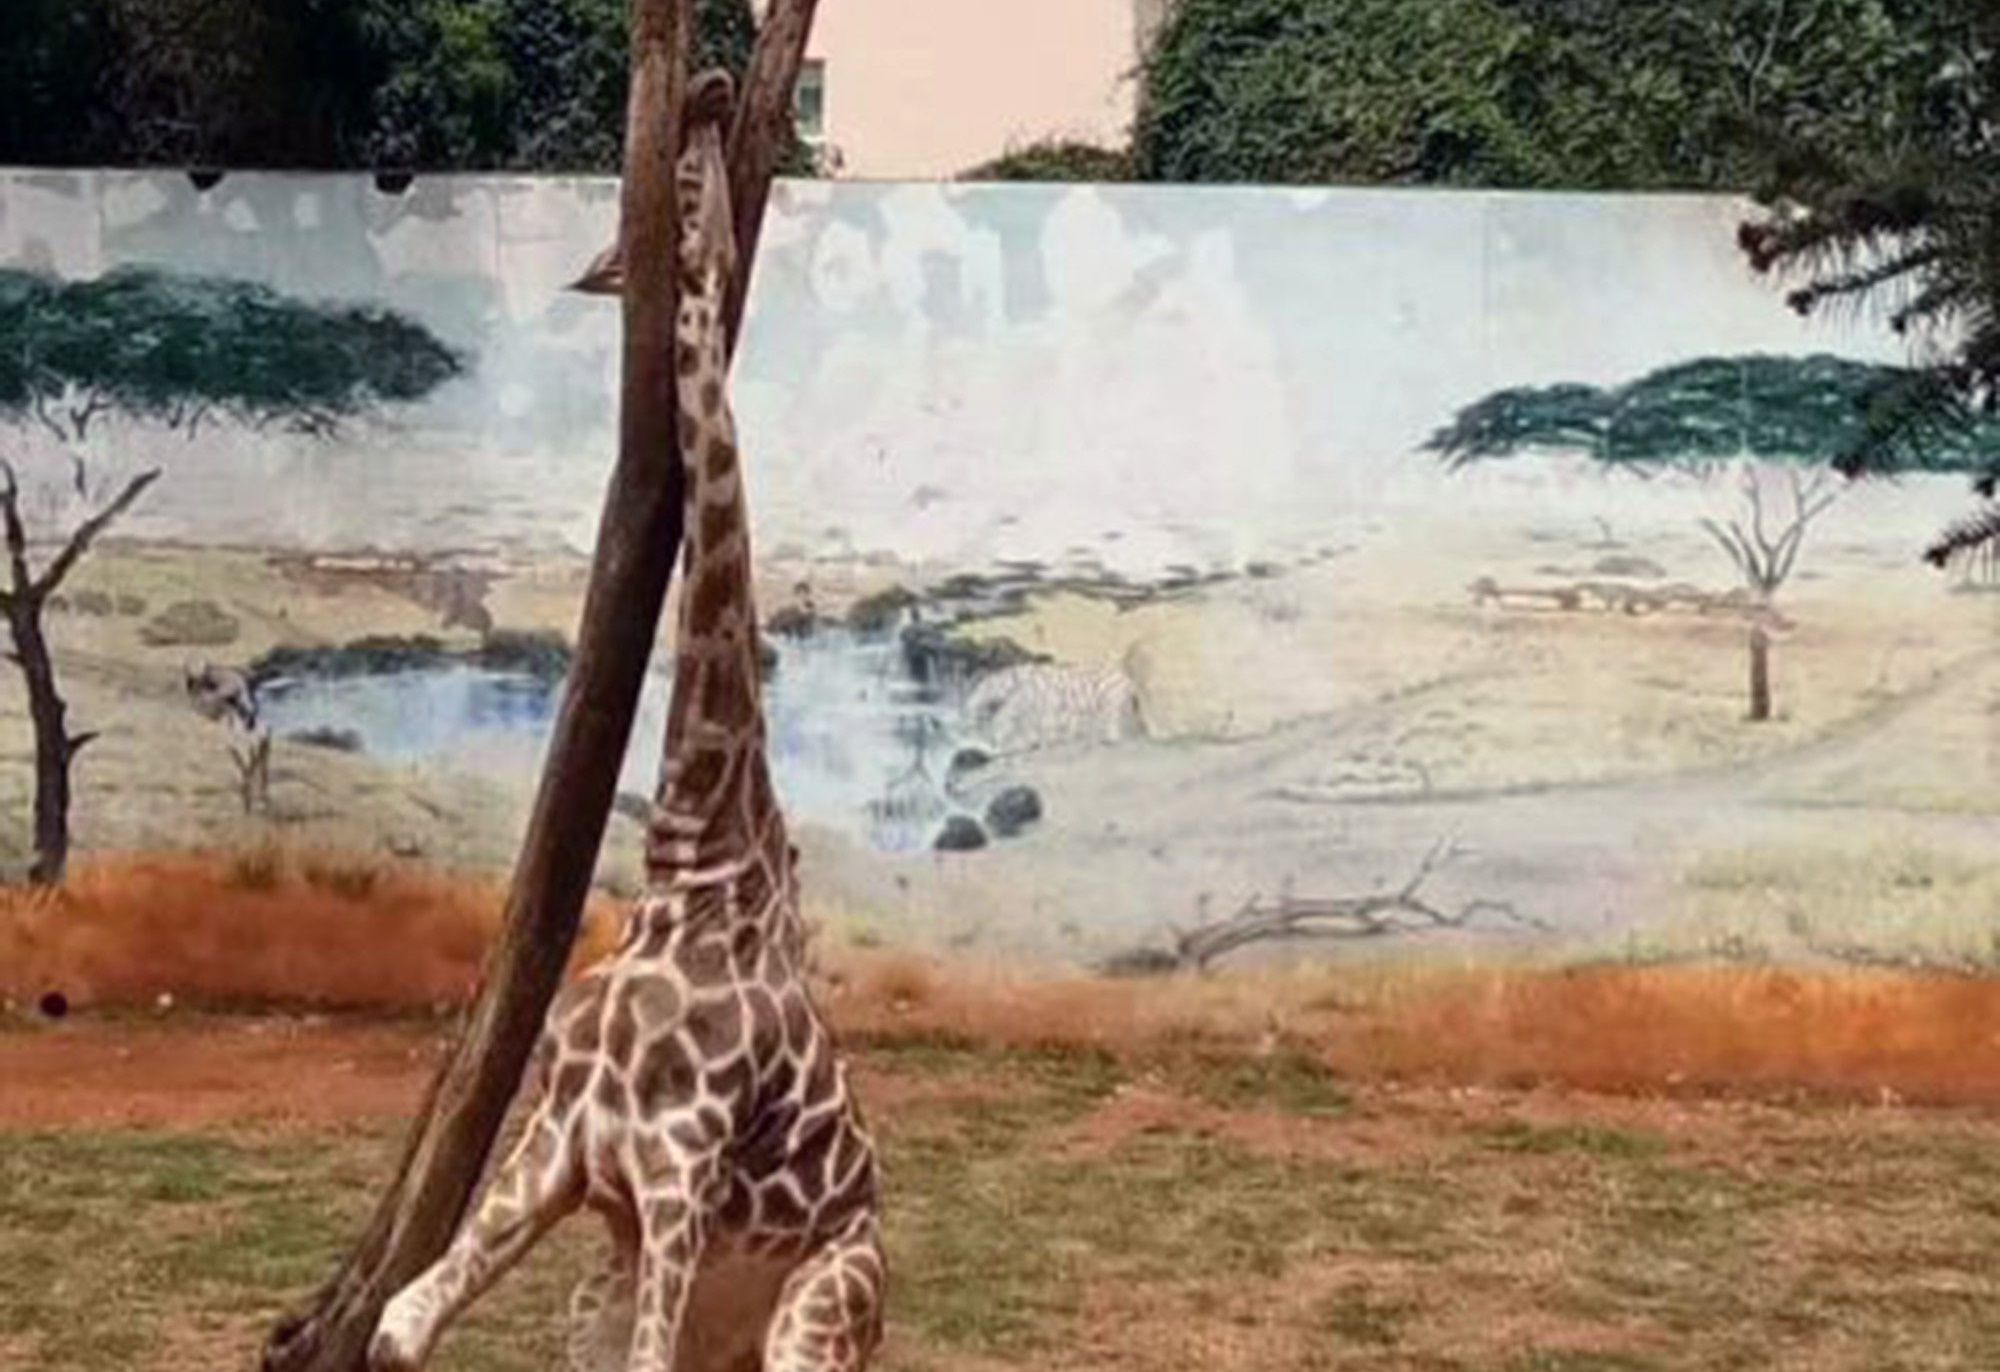 Giraffa muore con la testa incastrata tra gli alberi